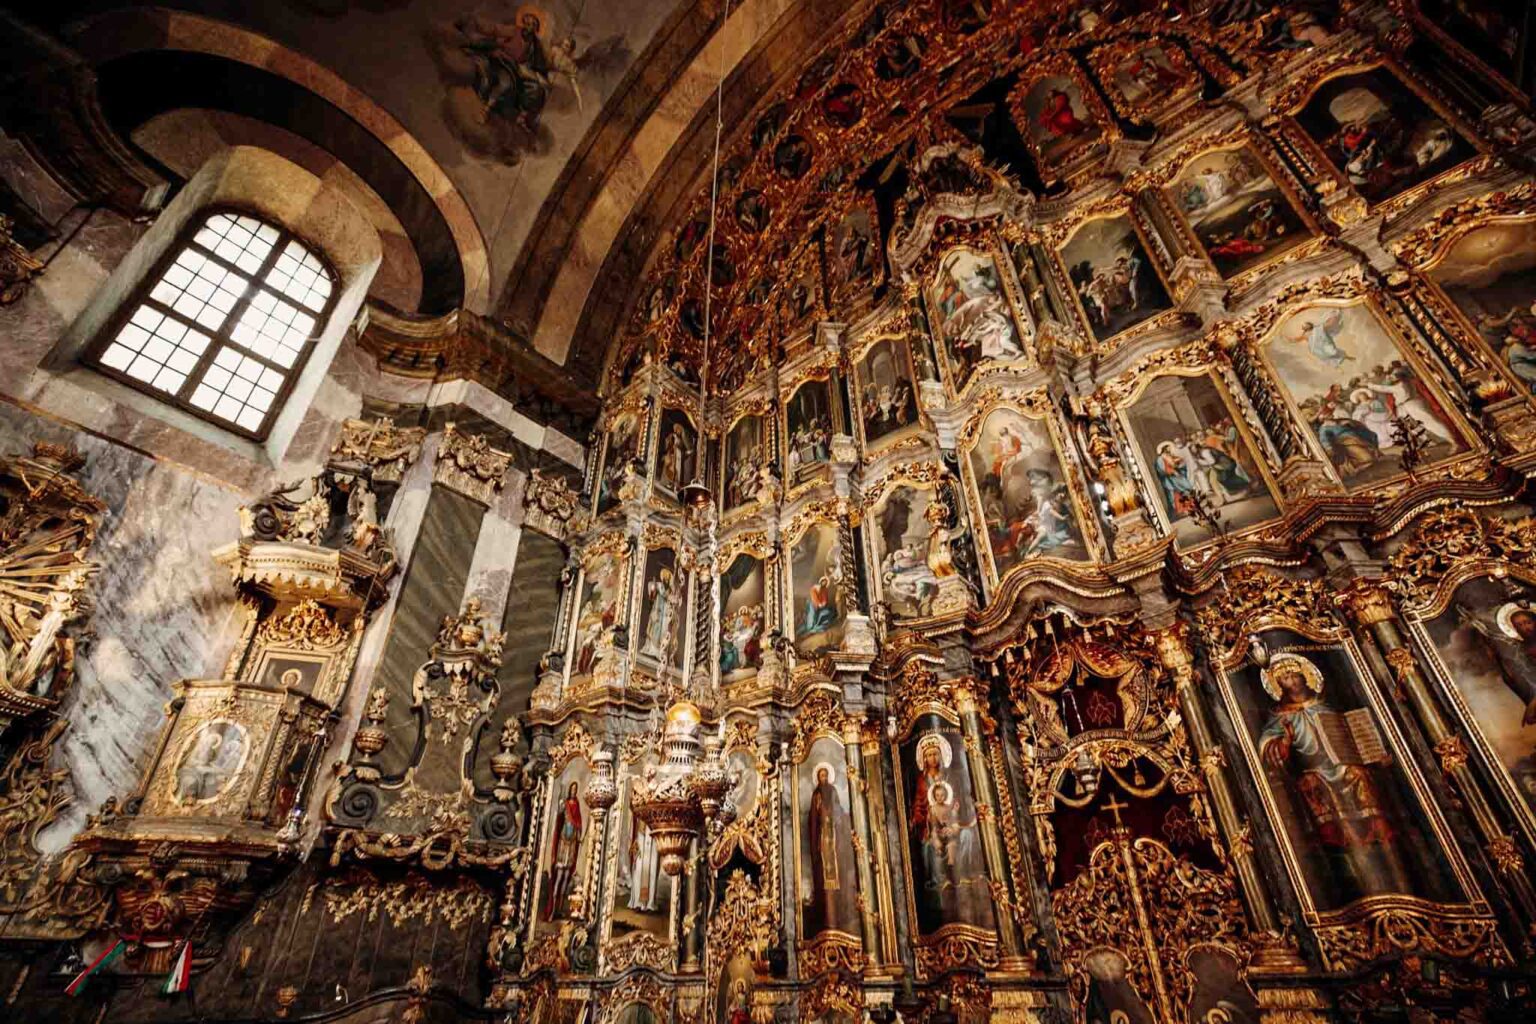 Ragyogó színek, kékes derengés, keleties bőség – Miskolcon rejtőzik Közép-Európa legnagyobb ikonosztáza